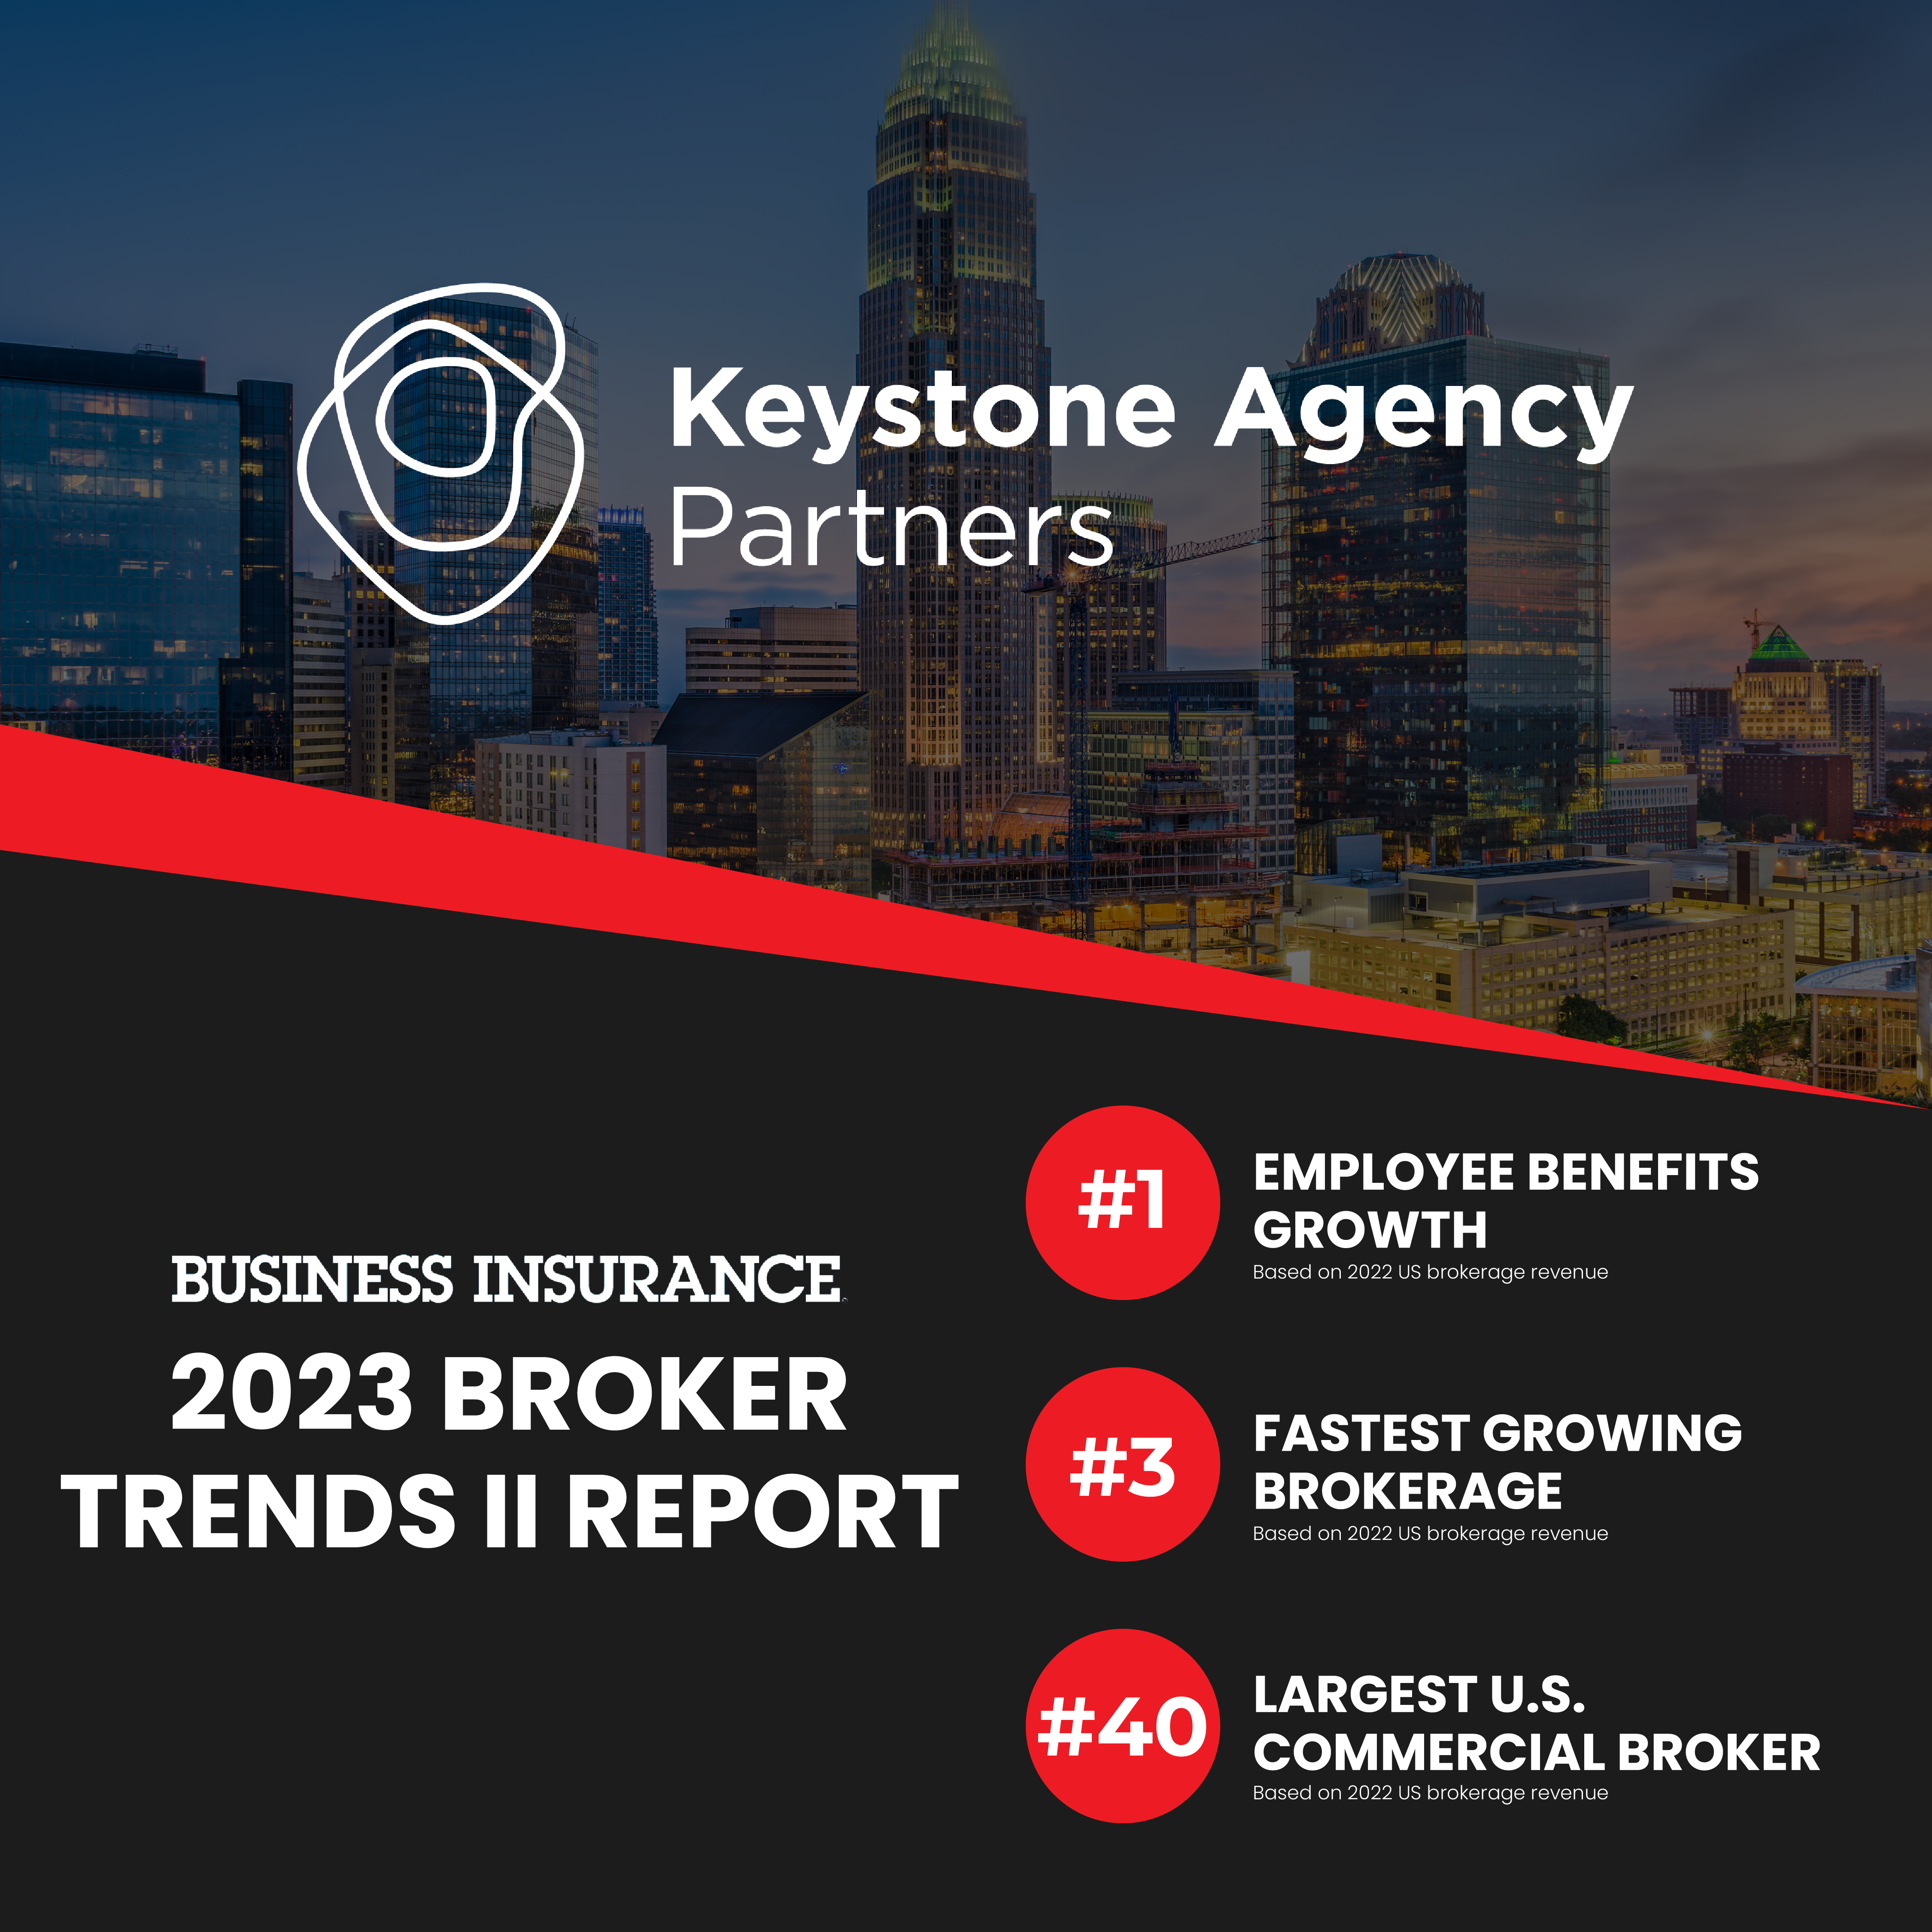 Keystone Agency Partners Named Leader in 2023 Broker Trends II by Business Insurance